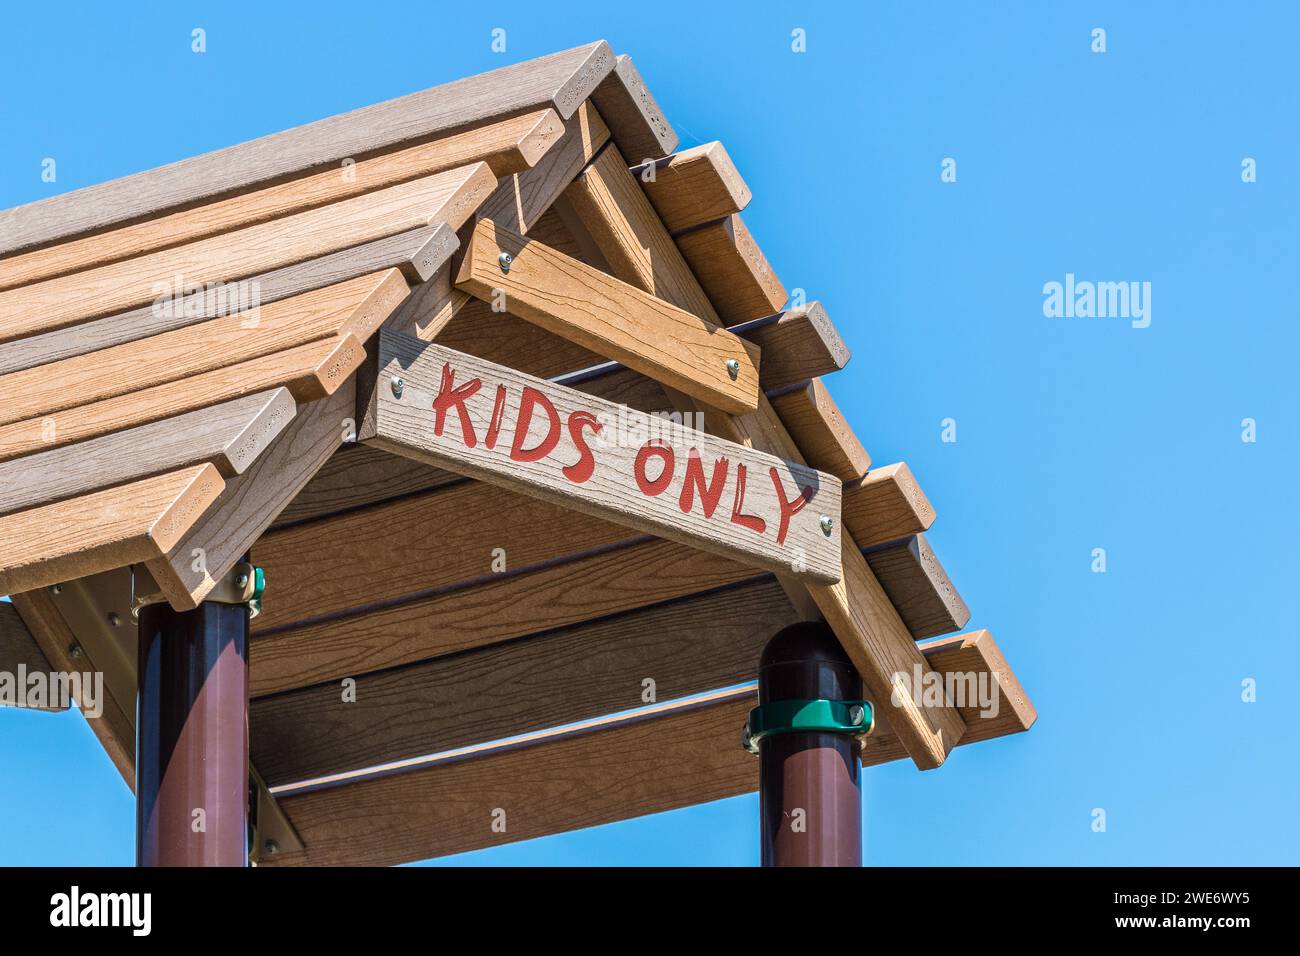 Accesso riservato ai bambini sul tetto in legno dell'attrezzatura per il parco giochi Foto Stock